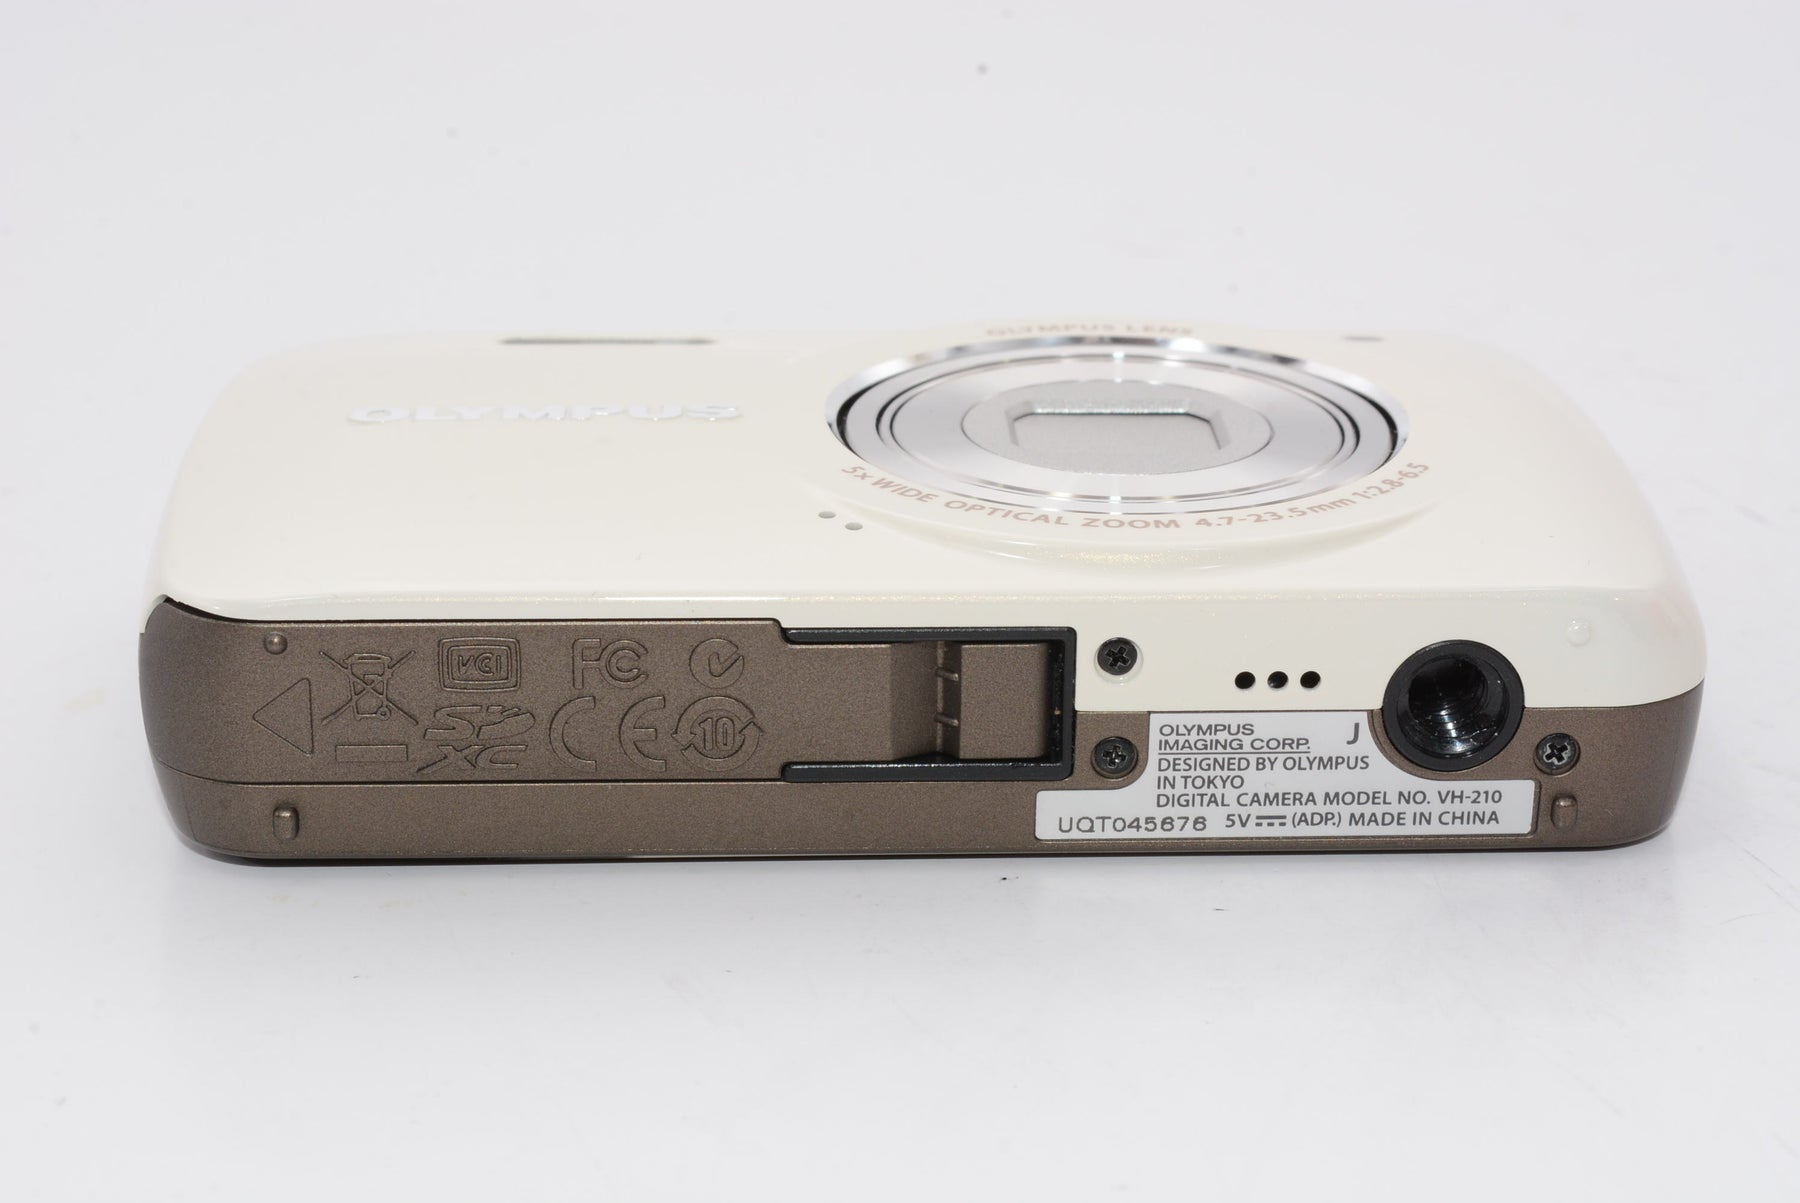 【外観特上級】OLYMPUS デジタルカメラ VH-210 ホワイト 1400万画素 光学5倍ズーム DIS ハイビジョンムービー 3.0型LCD 広角26mm 3Dフォト機能 VH-210 WHT